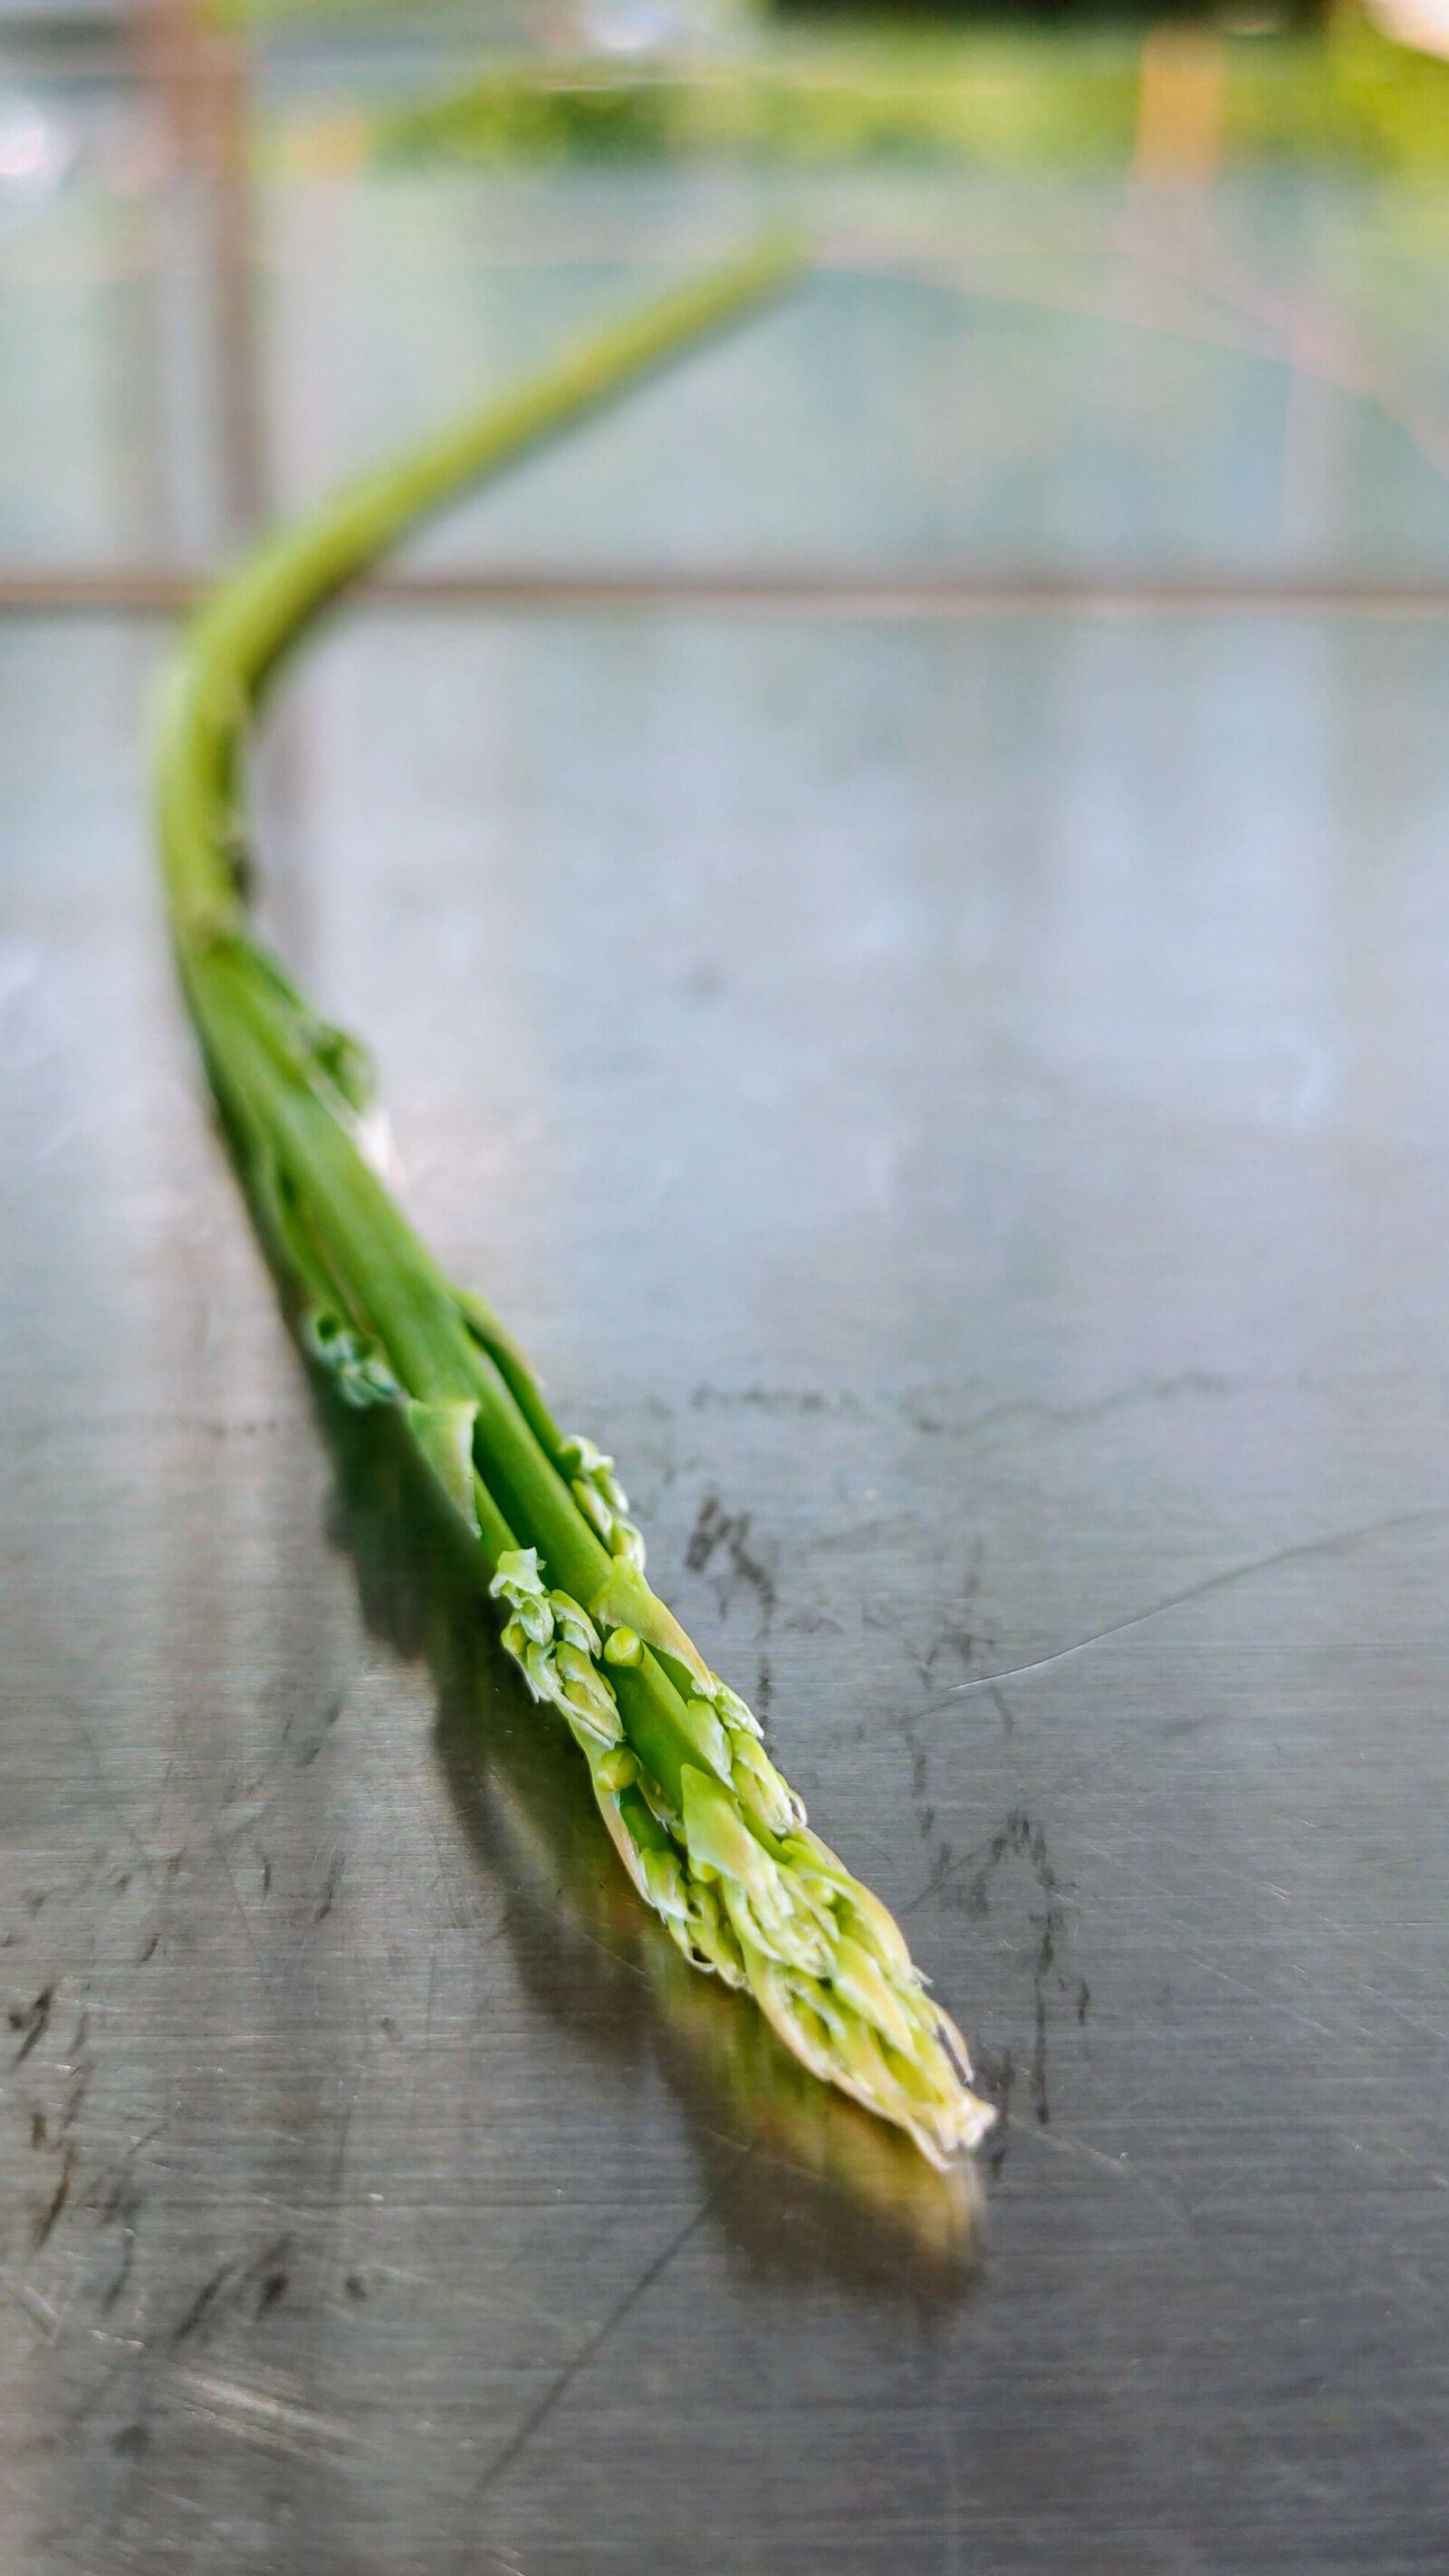 OPPO RENO2 sample photo. Asparagus, garden asparagus, plant photography